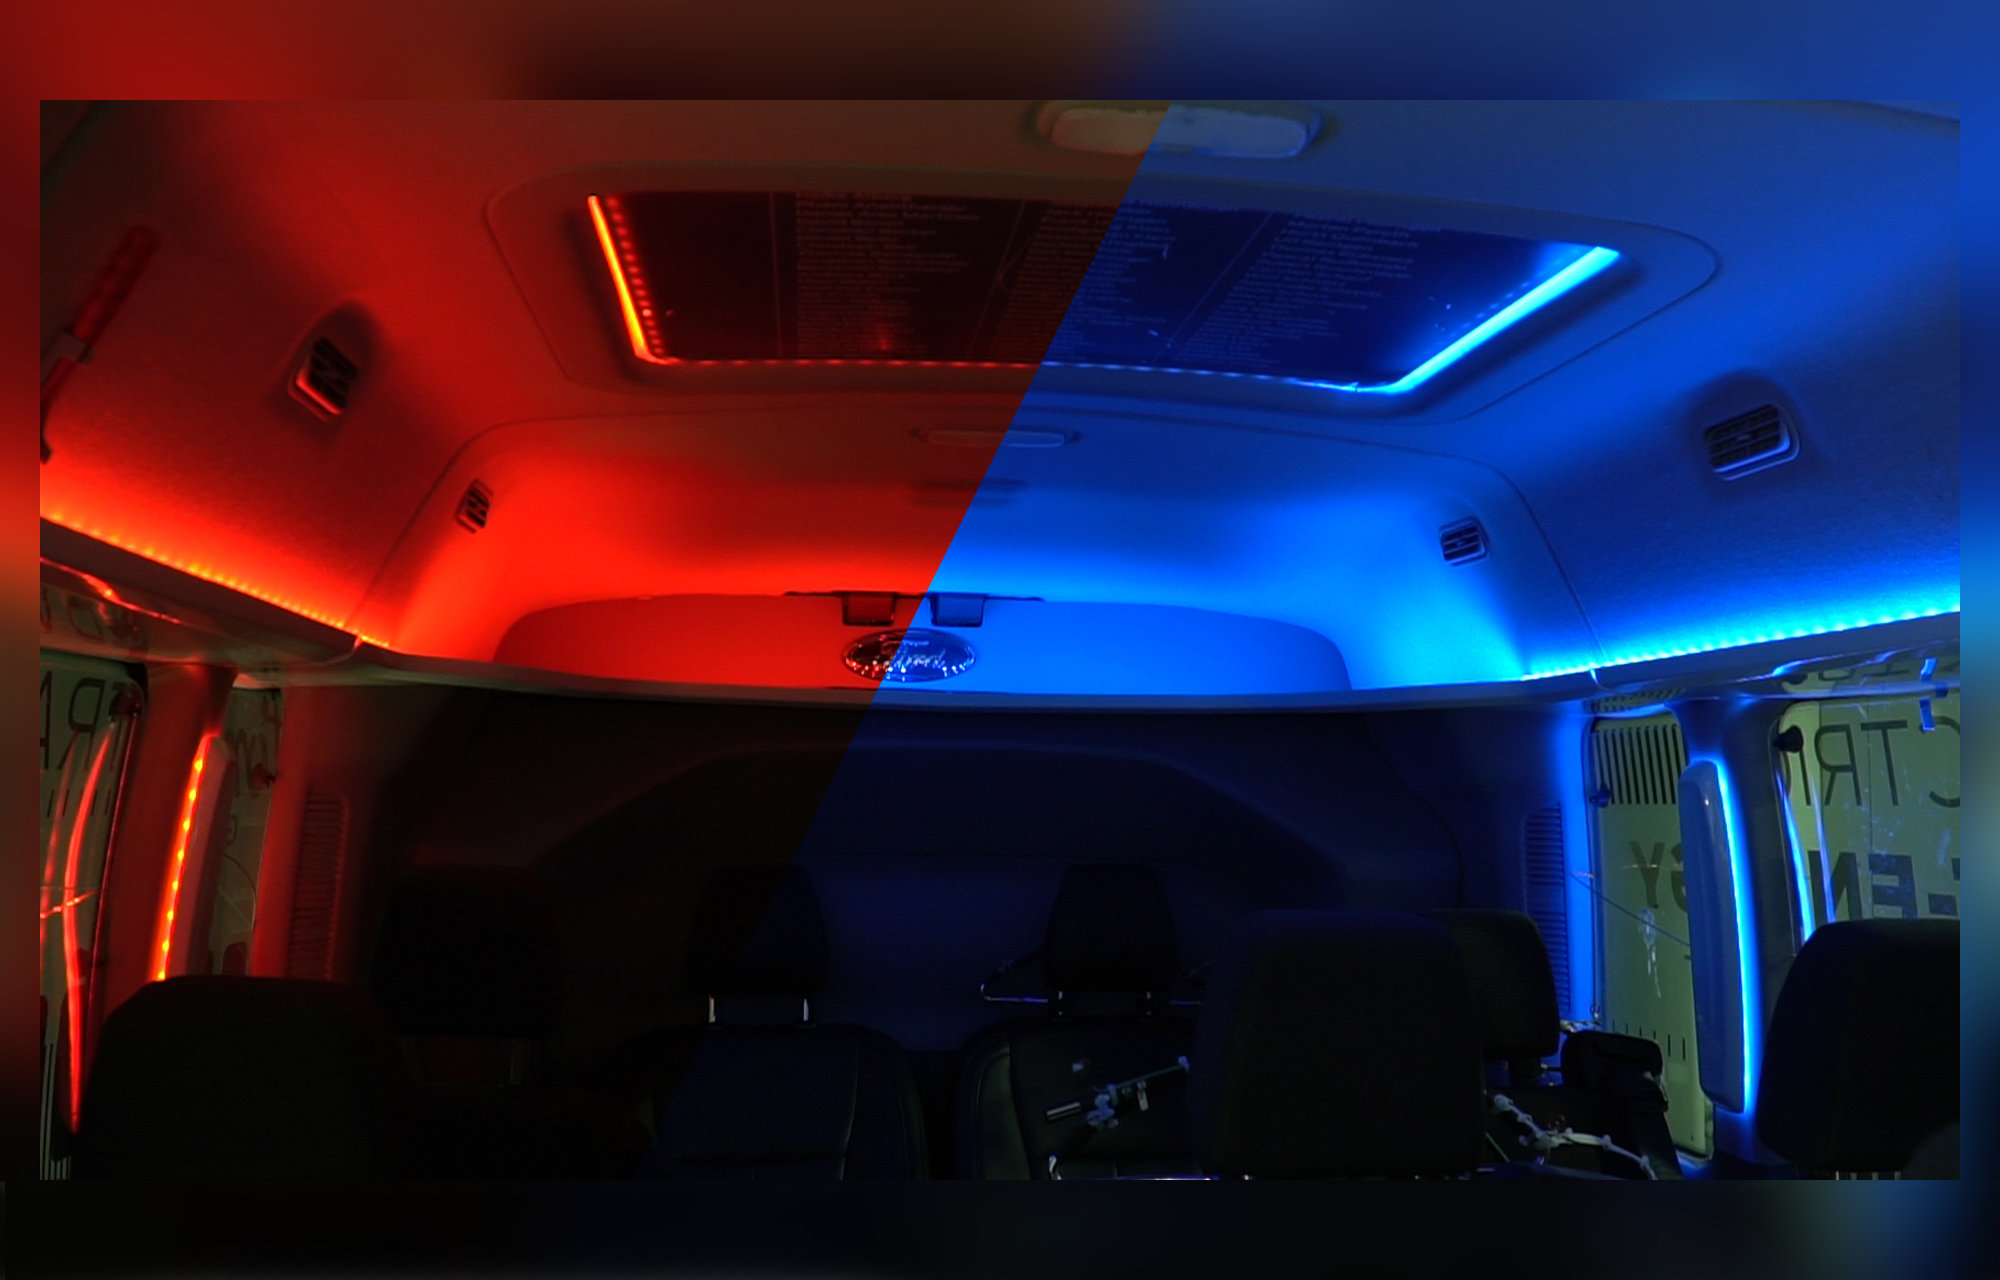 Anpassad ljussättning kan ge längre räckvidd för elbilar